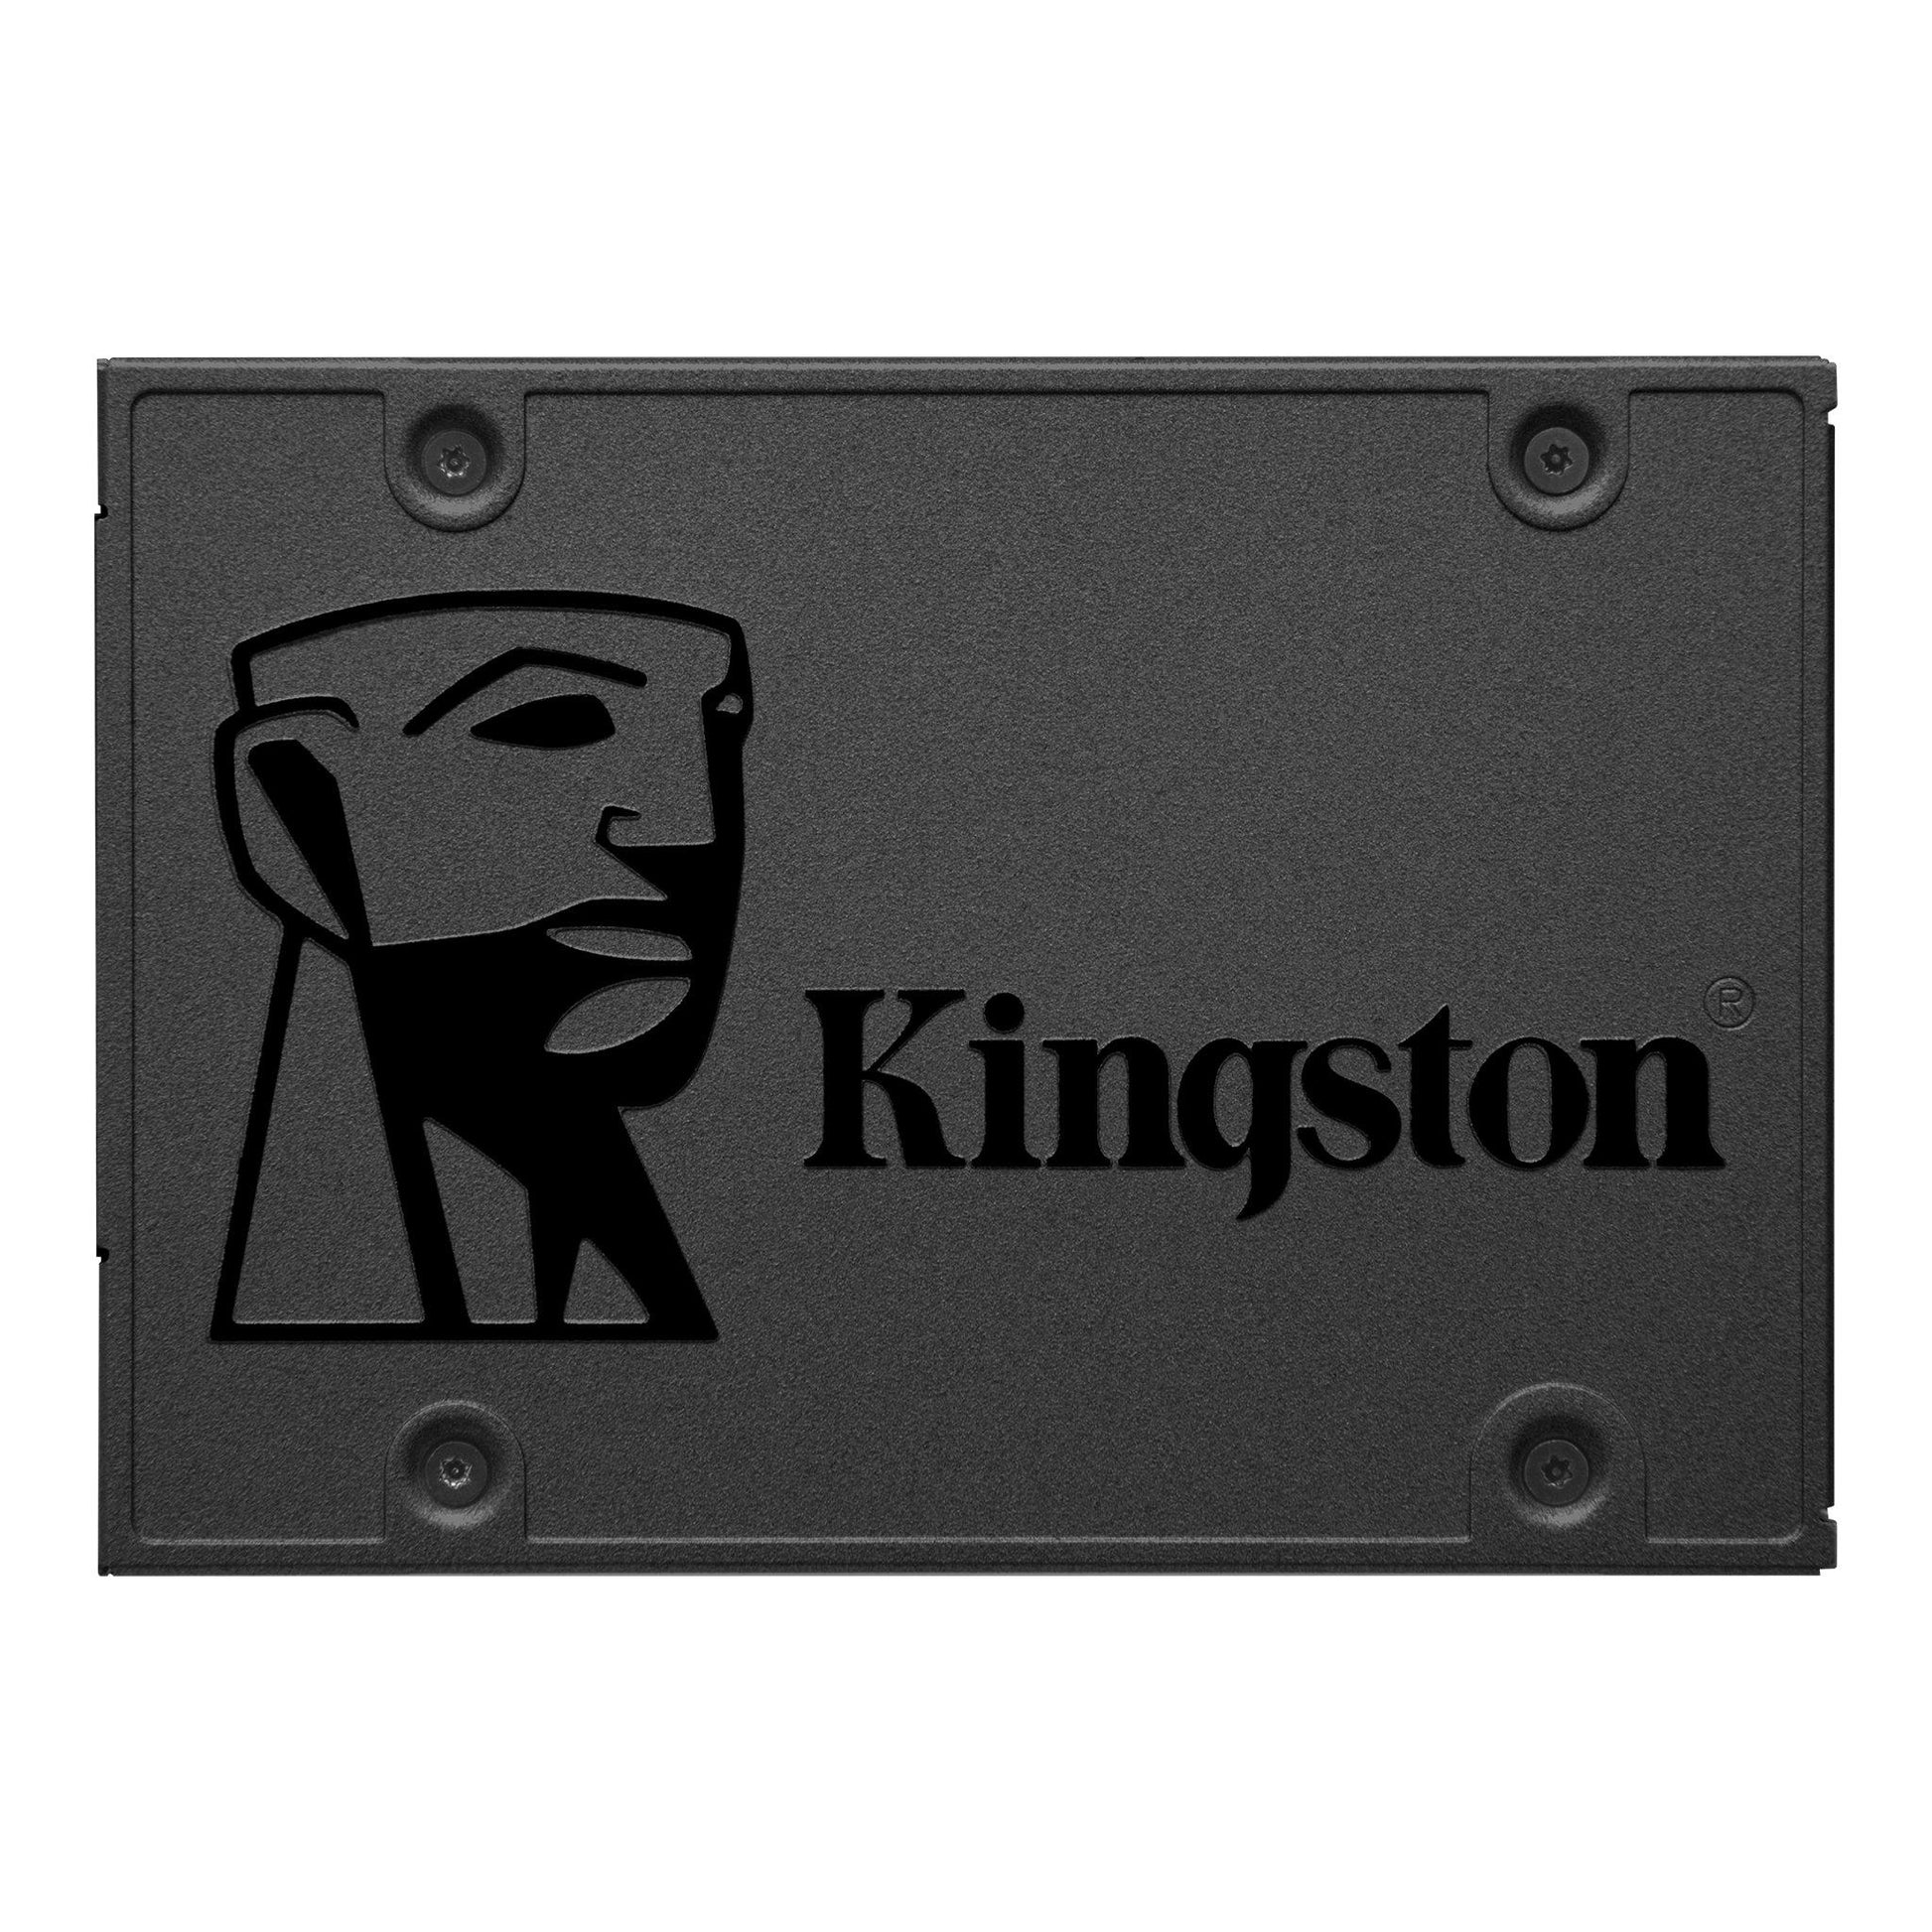 KINGSTON 240GB A400 2.5" SATA 6GB/S SSD SOLID STATE DRIVE-SOLID STATE DRIVE-Makotek Computers